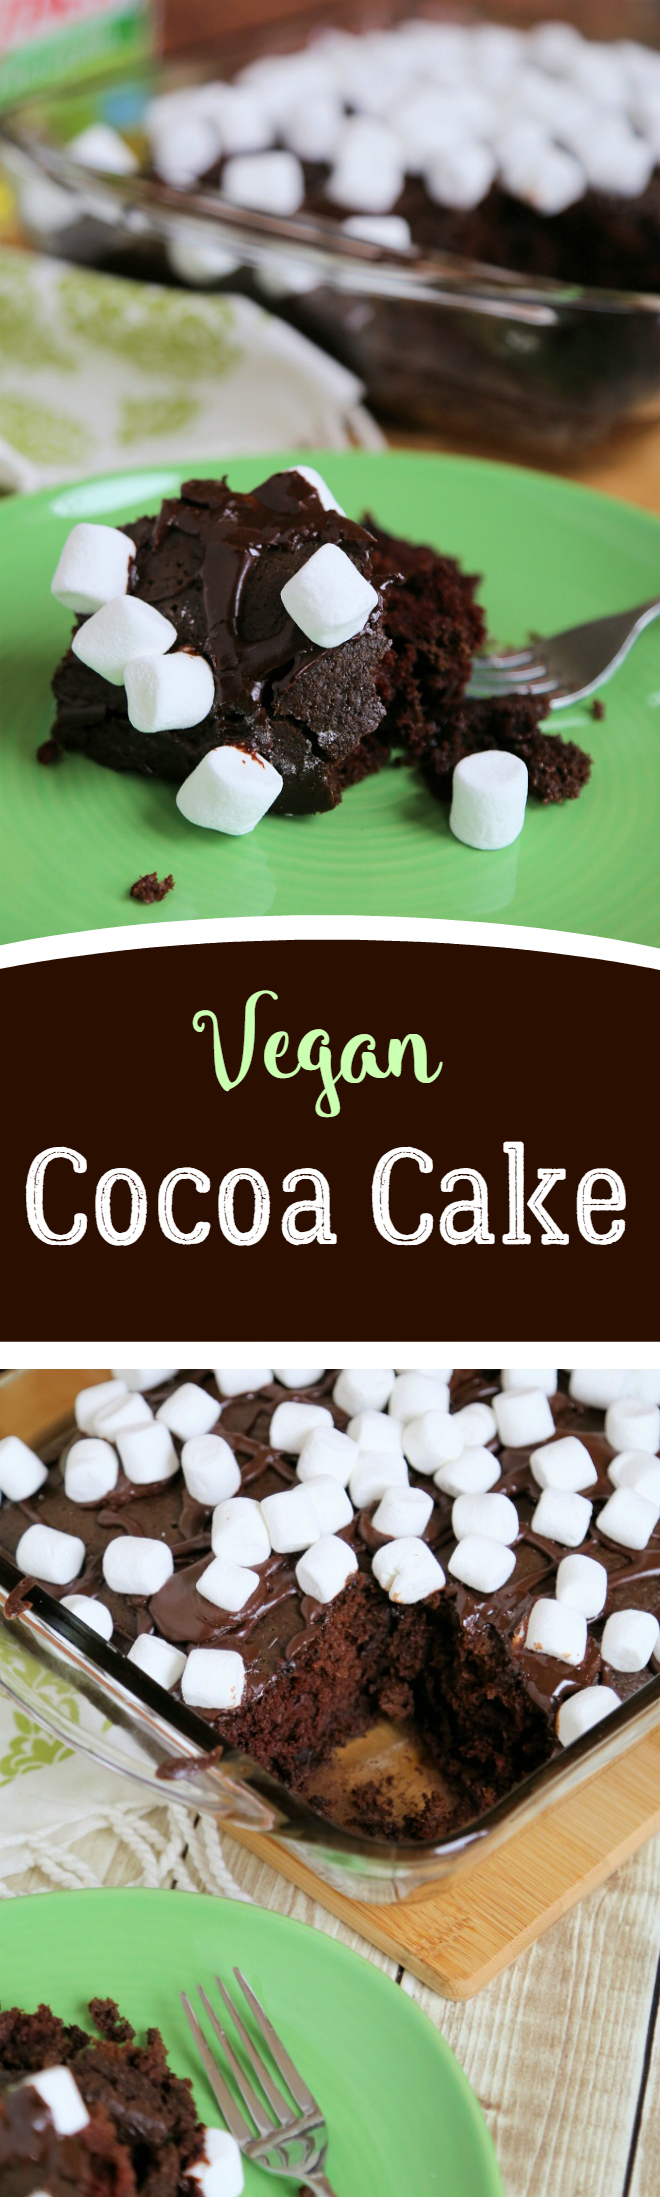 Vegan Cocoa Cake Recipe